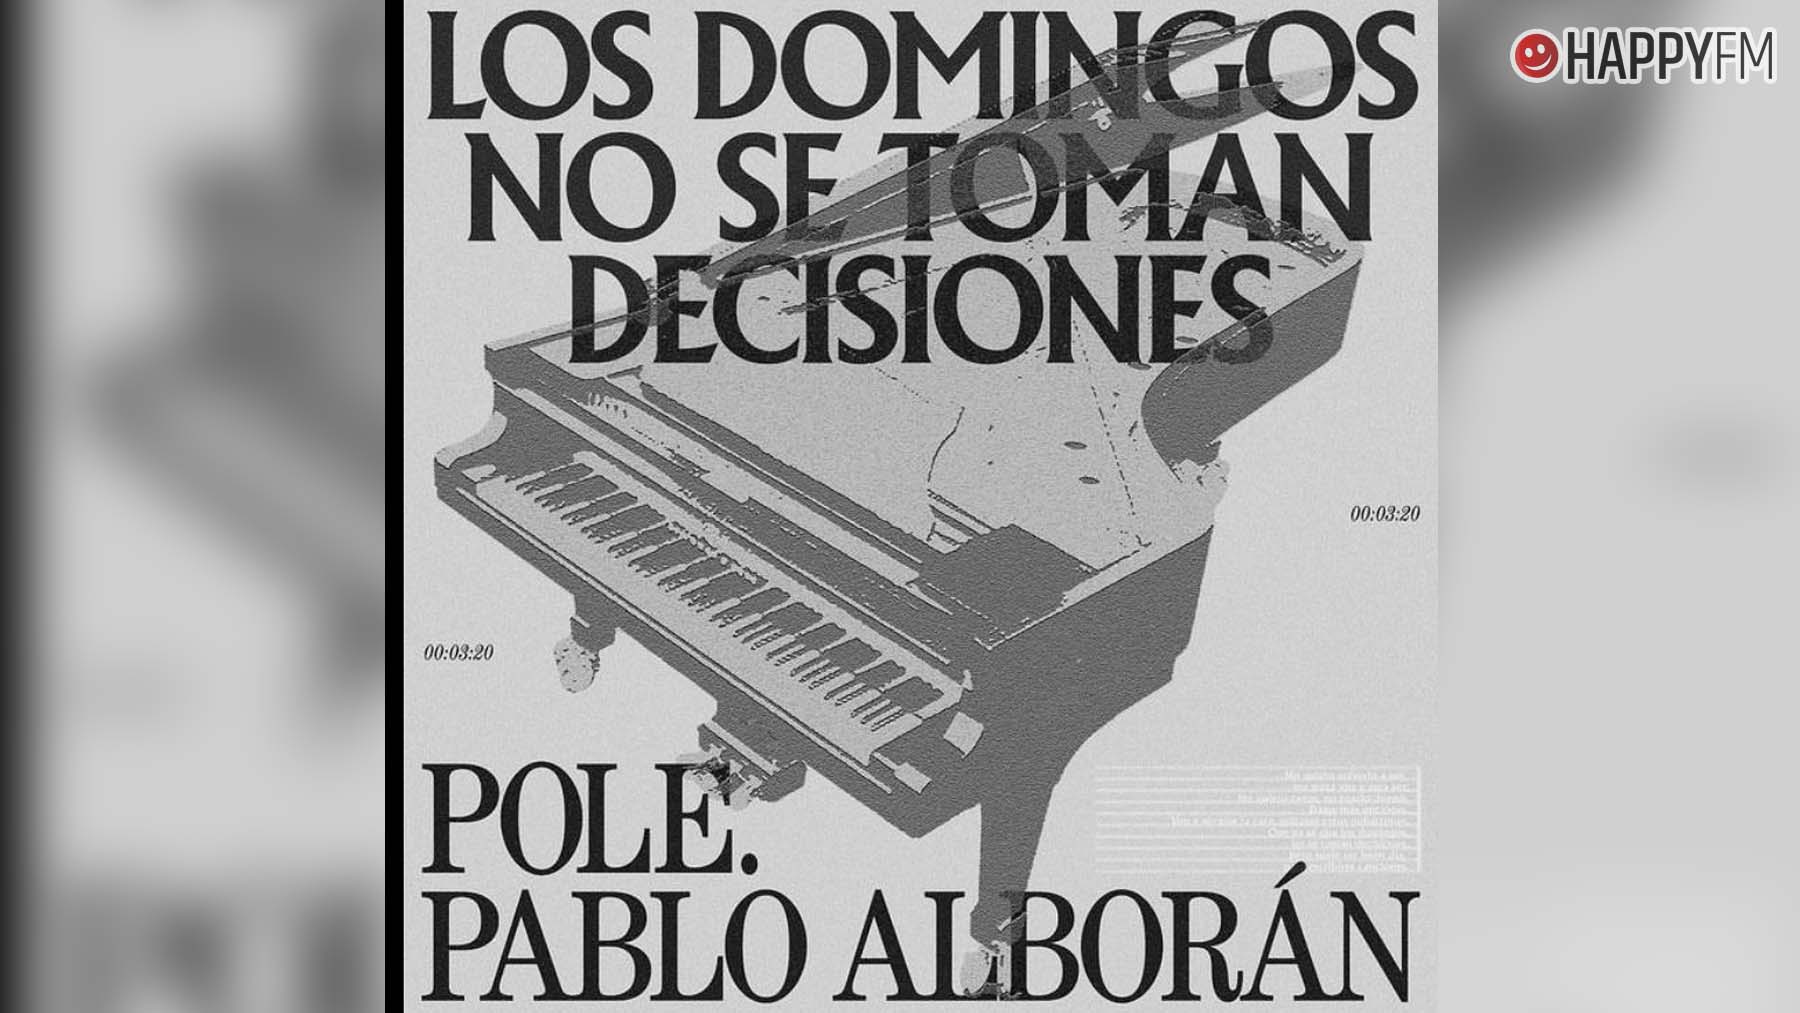 ‘Los domingos no se toman decisiones’, de Pole y Pablo Alborán: letra y vídeo